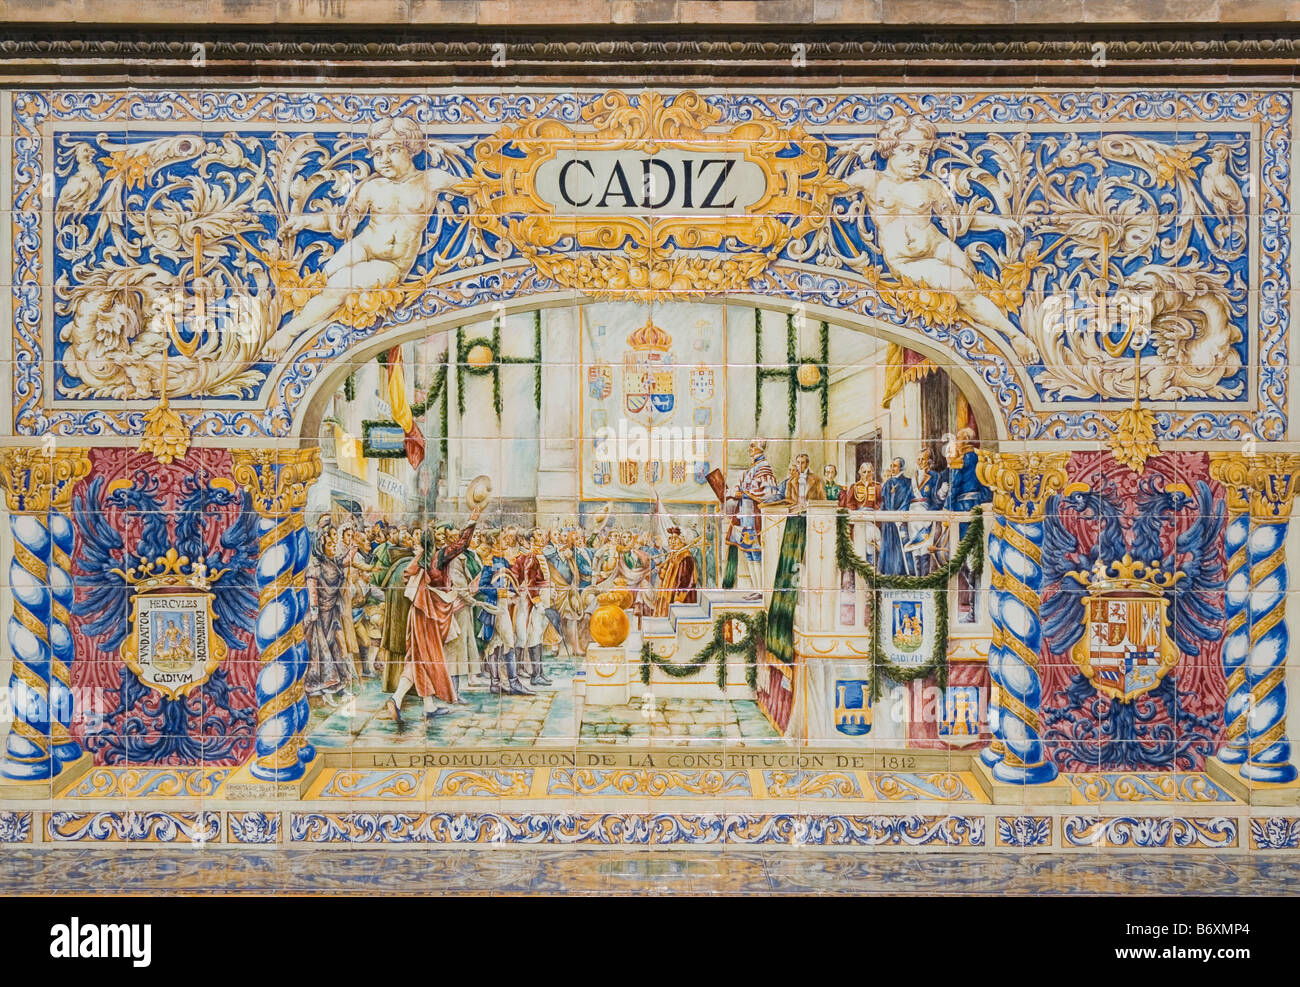 Siviglia Spagna piastrelle di ceramica nella Plaza de España che raffigurano la proclamazione della Costituzione nel 1812 in Cadiz Foto Stock